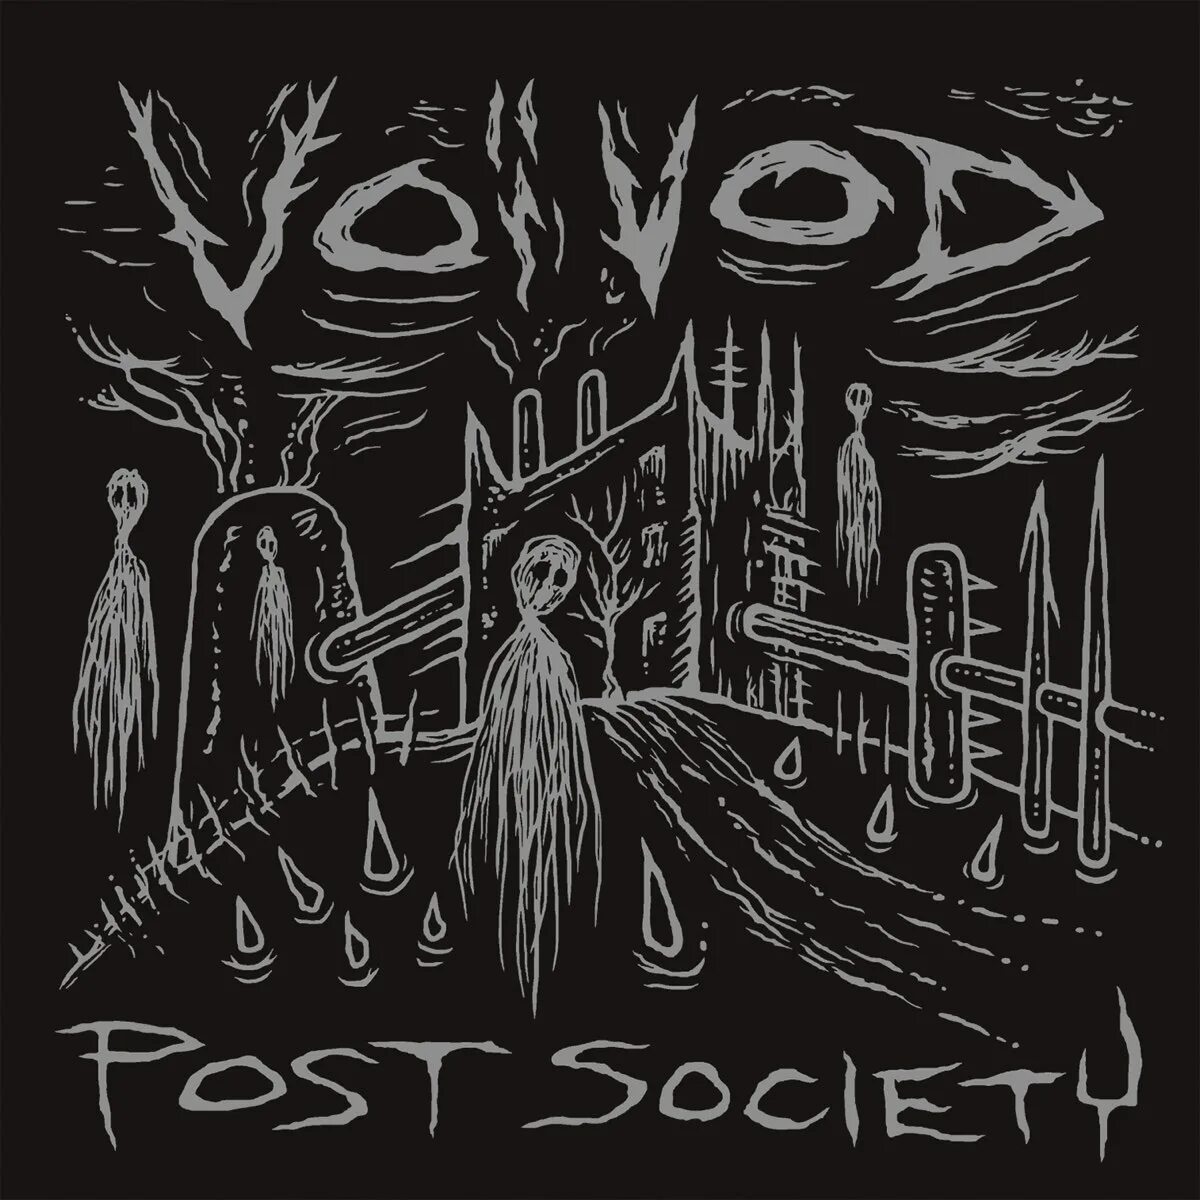 Post society. Voivod Post Society. Voivod — Post Society (2016). Voivod album. Voivod альбомы.